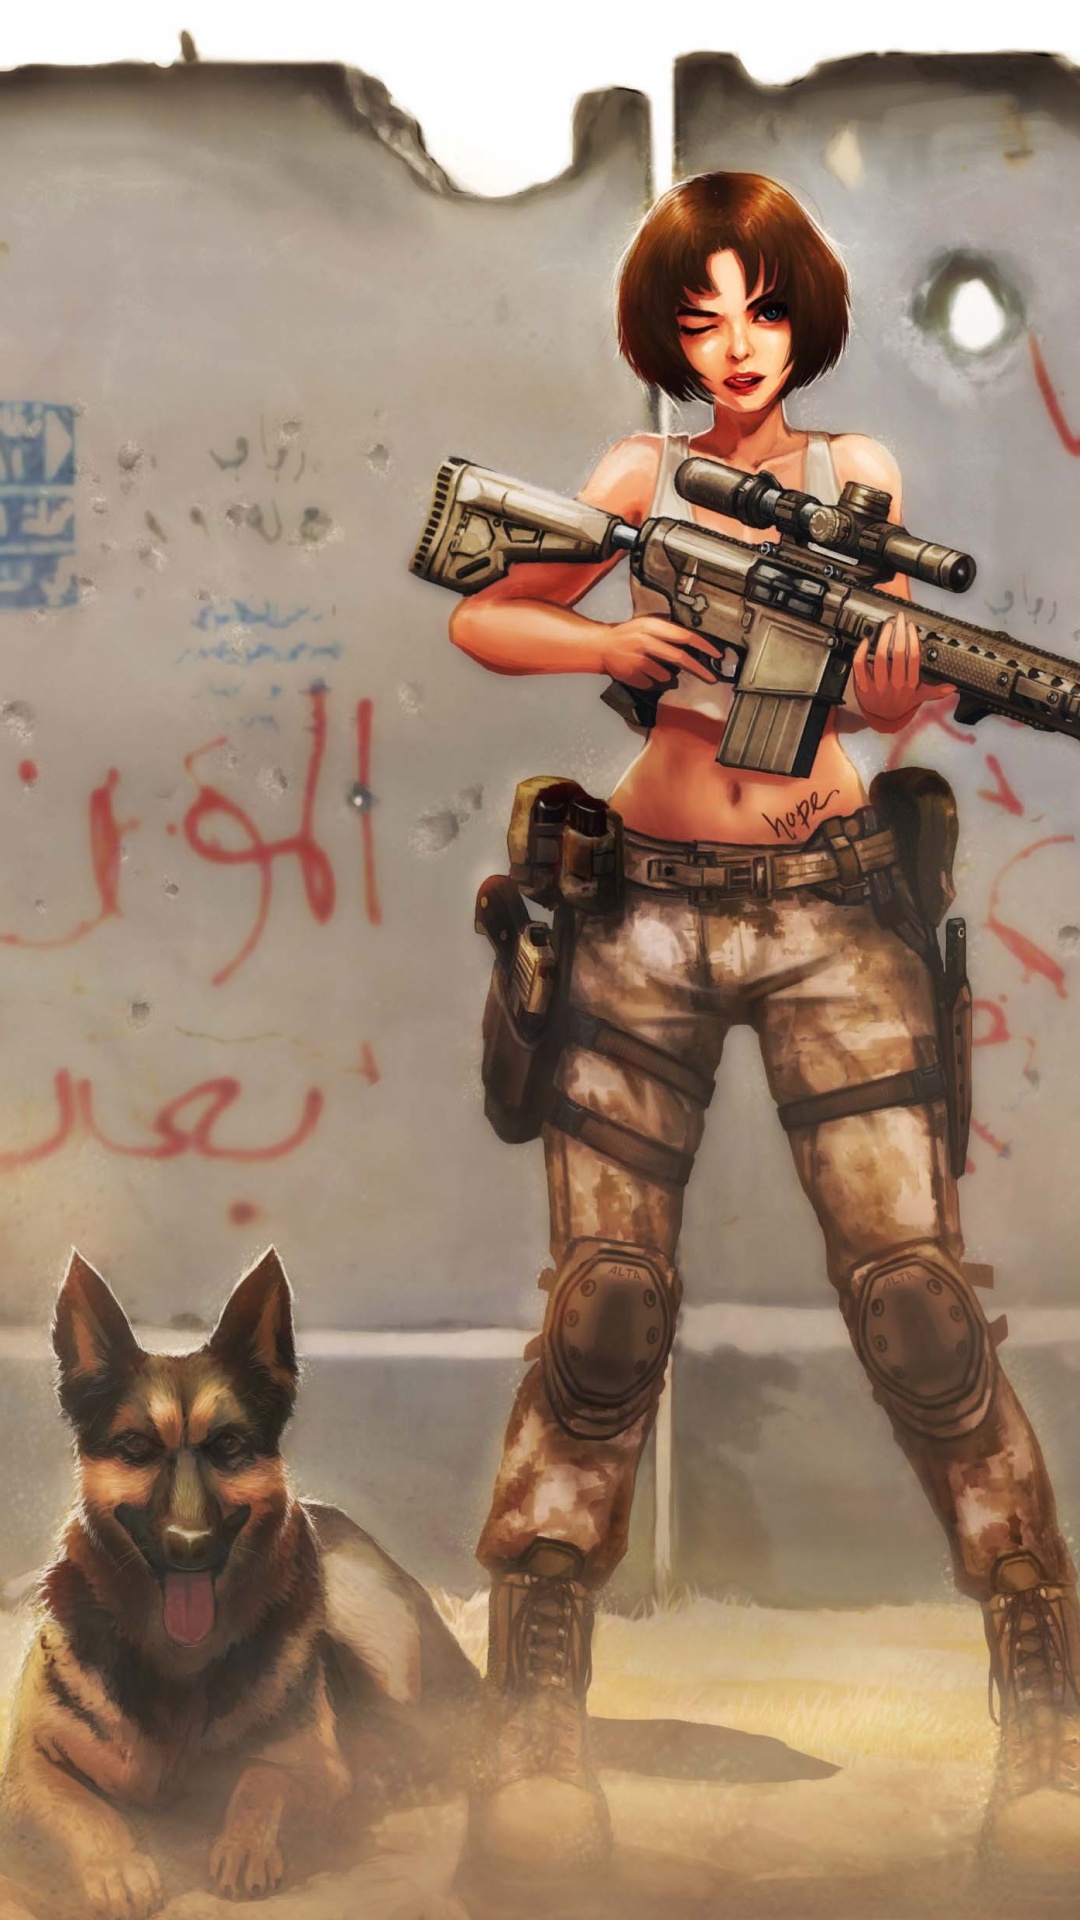 看门狗, 厚厚的土, 女孩的枪, 武器, 虚构的人物 壁纸 1080x1920 允许